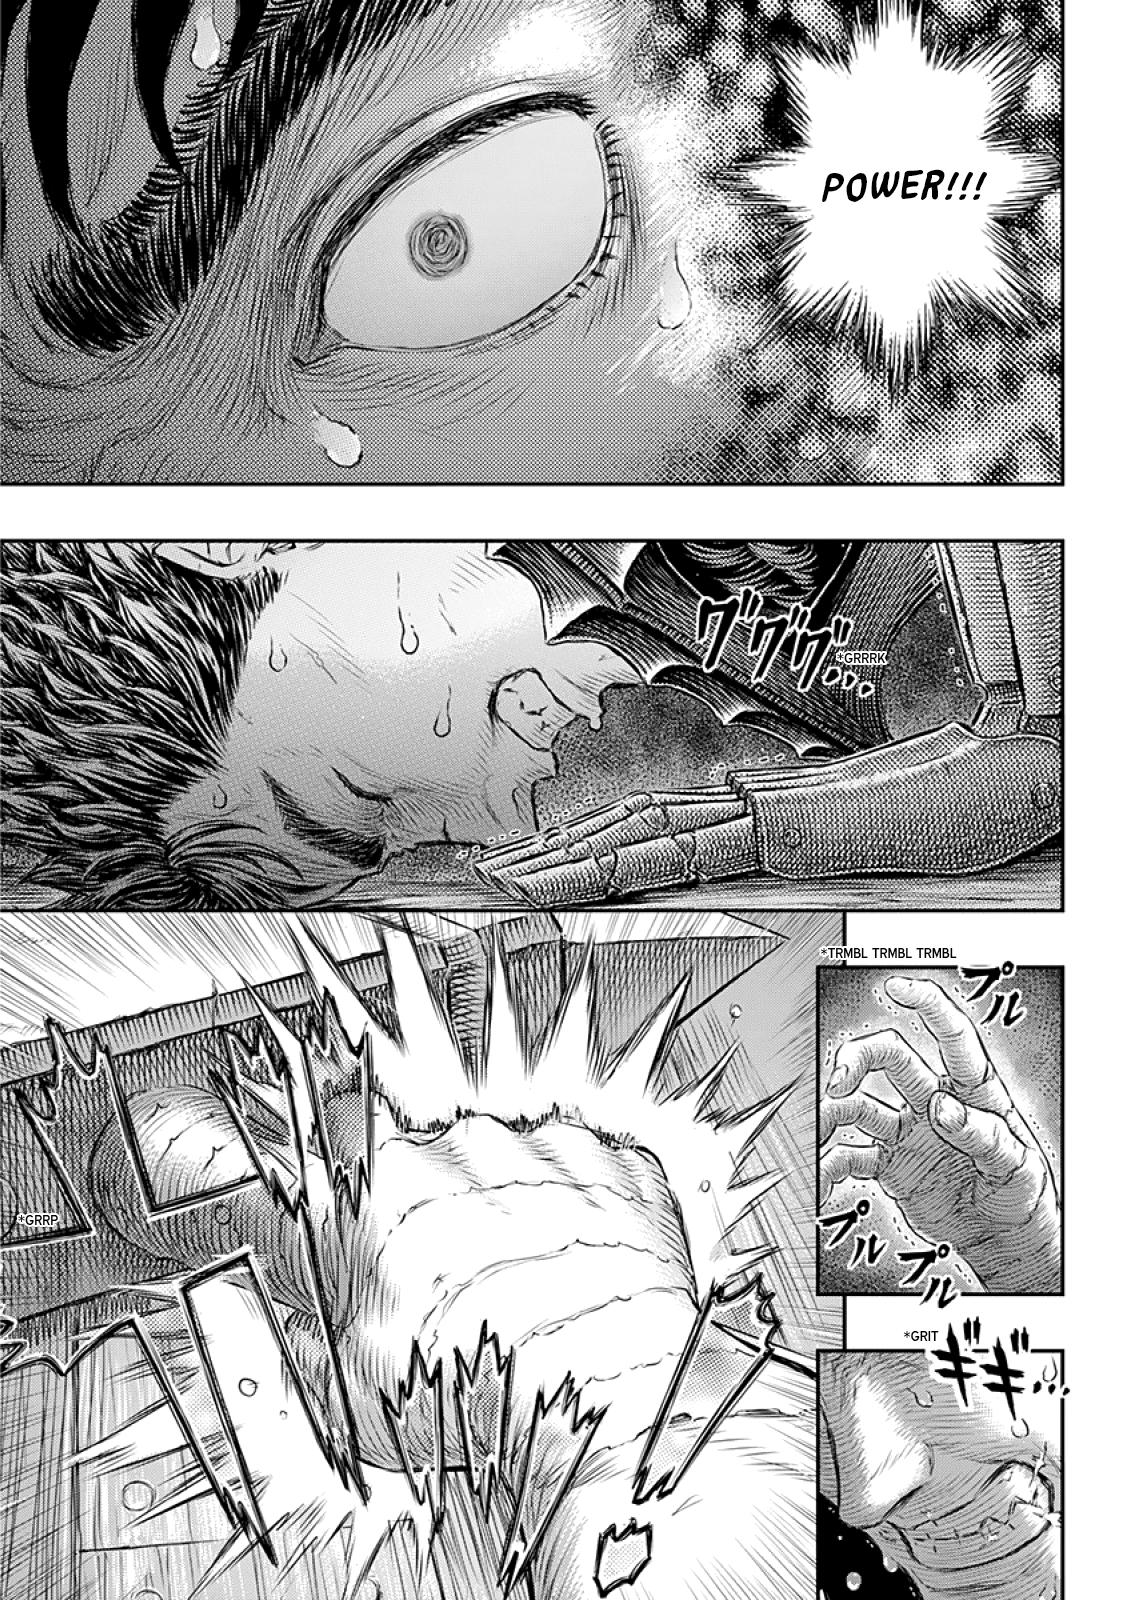 Berserk Manga Chapter 373 image 11